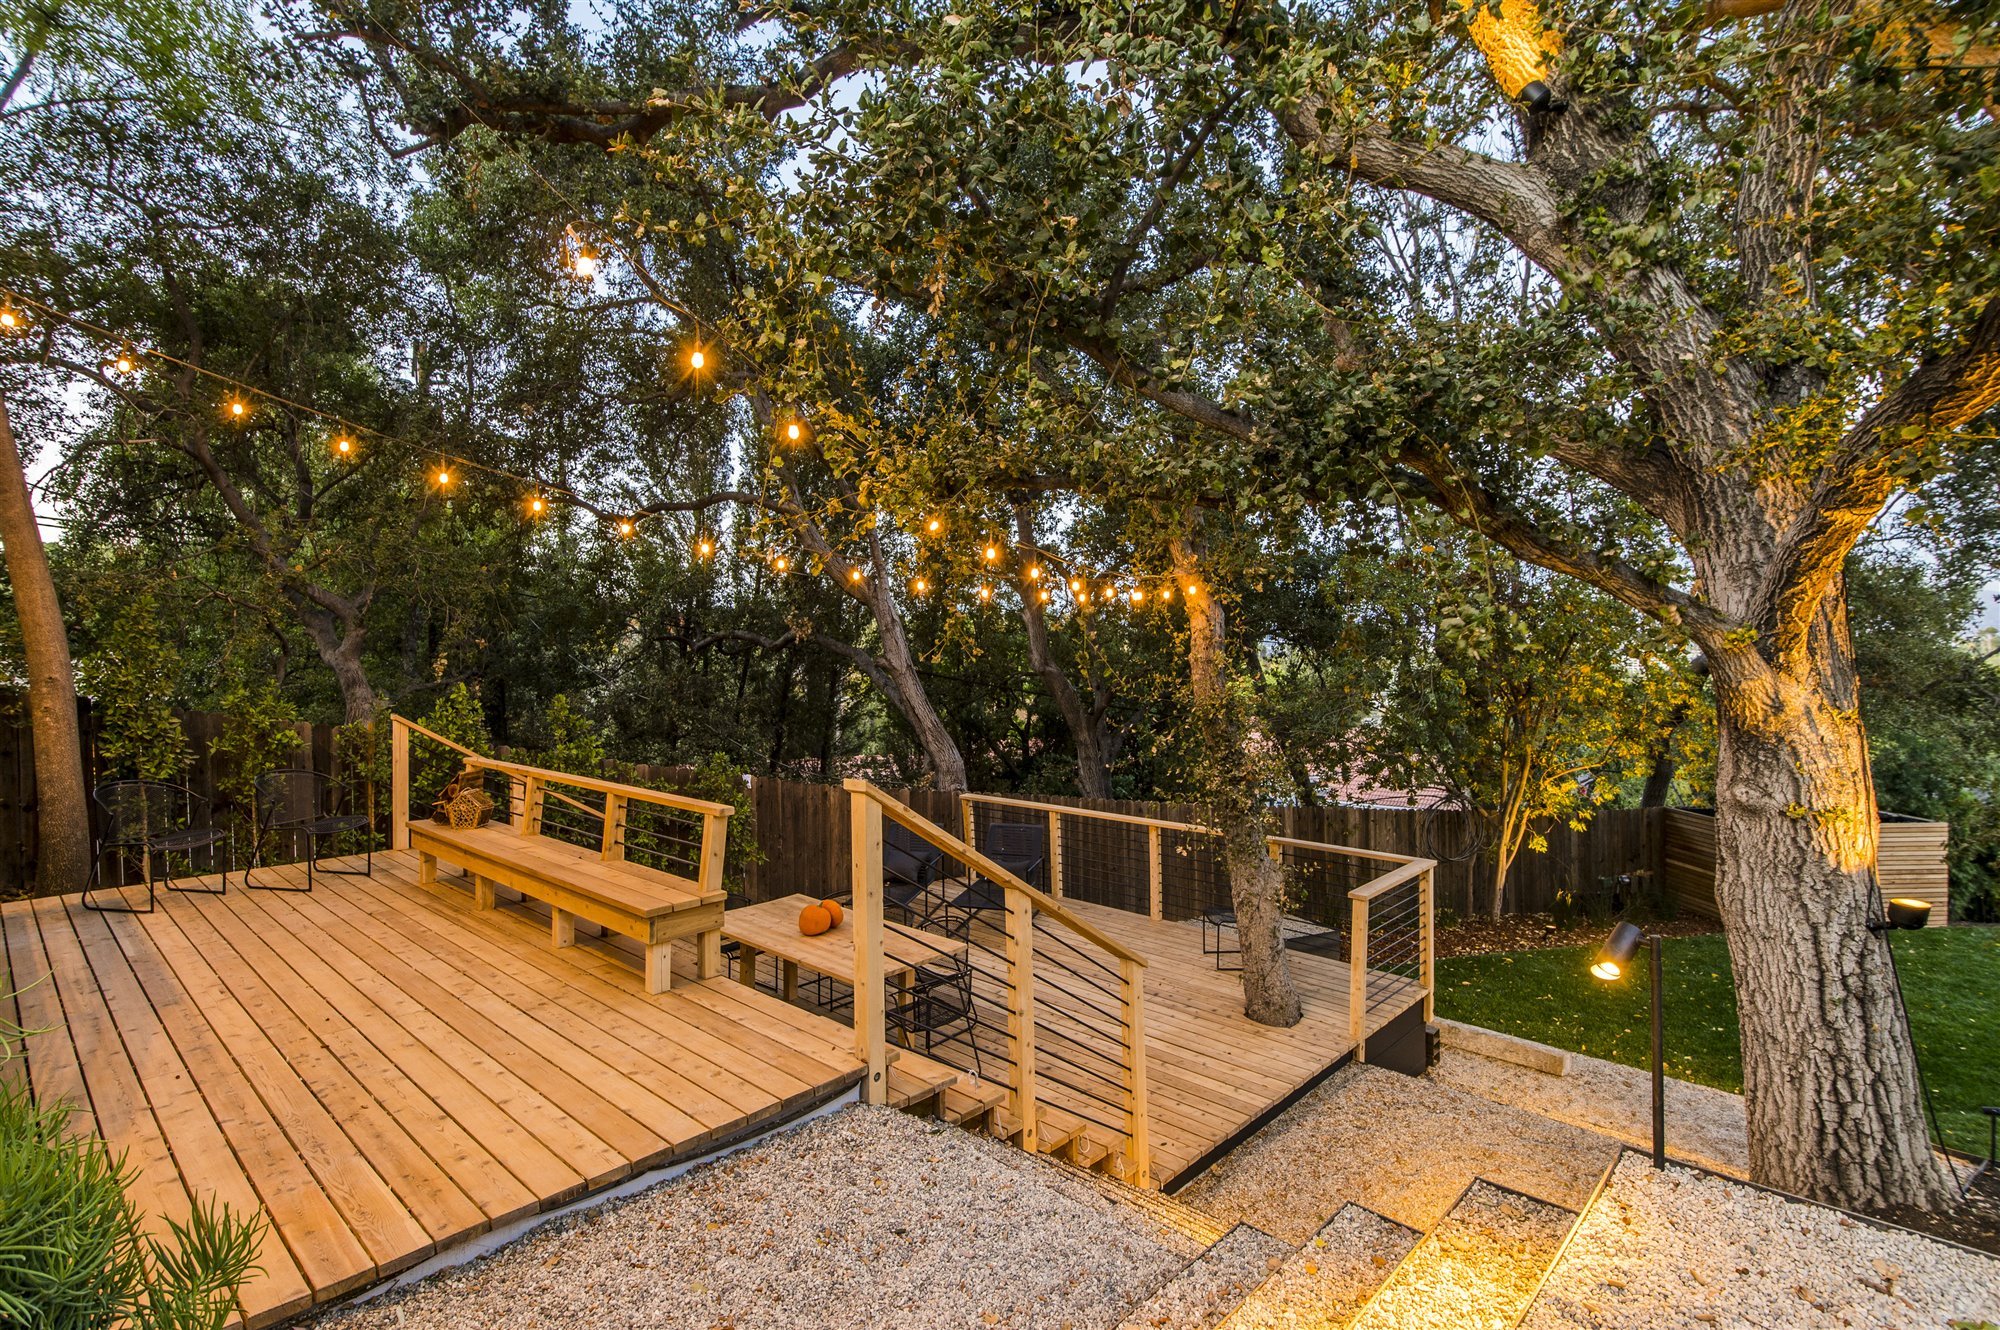 Casa moderna del actor de Modern Family Jesse Tyler Ferguson en Encino los Angeles camino al jardin